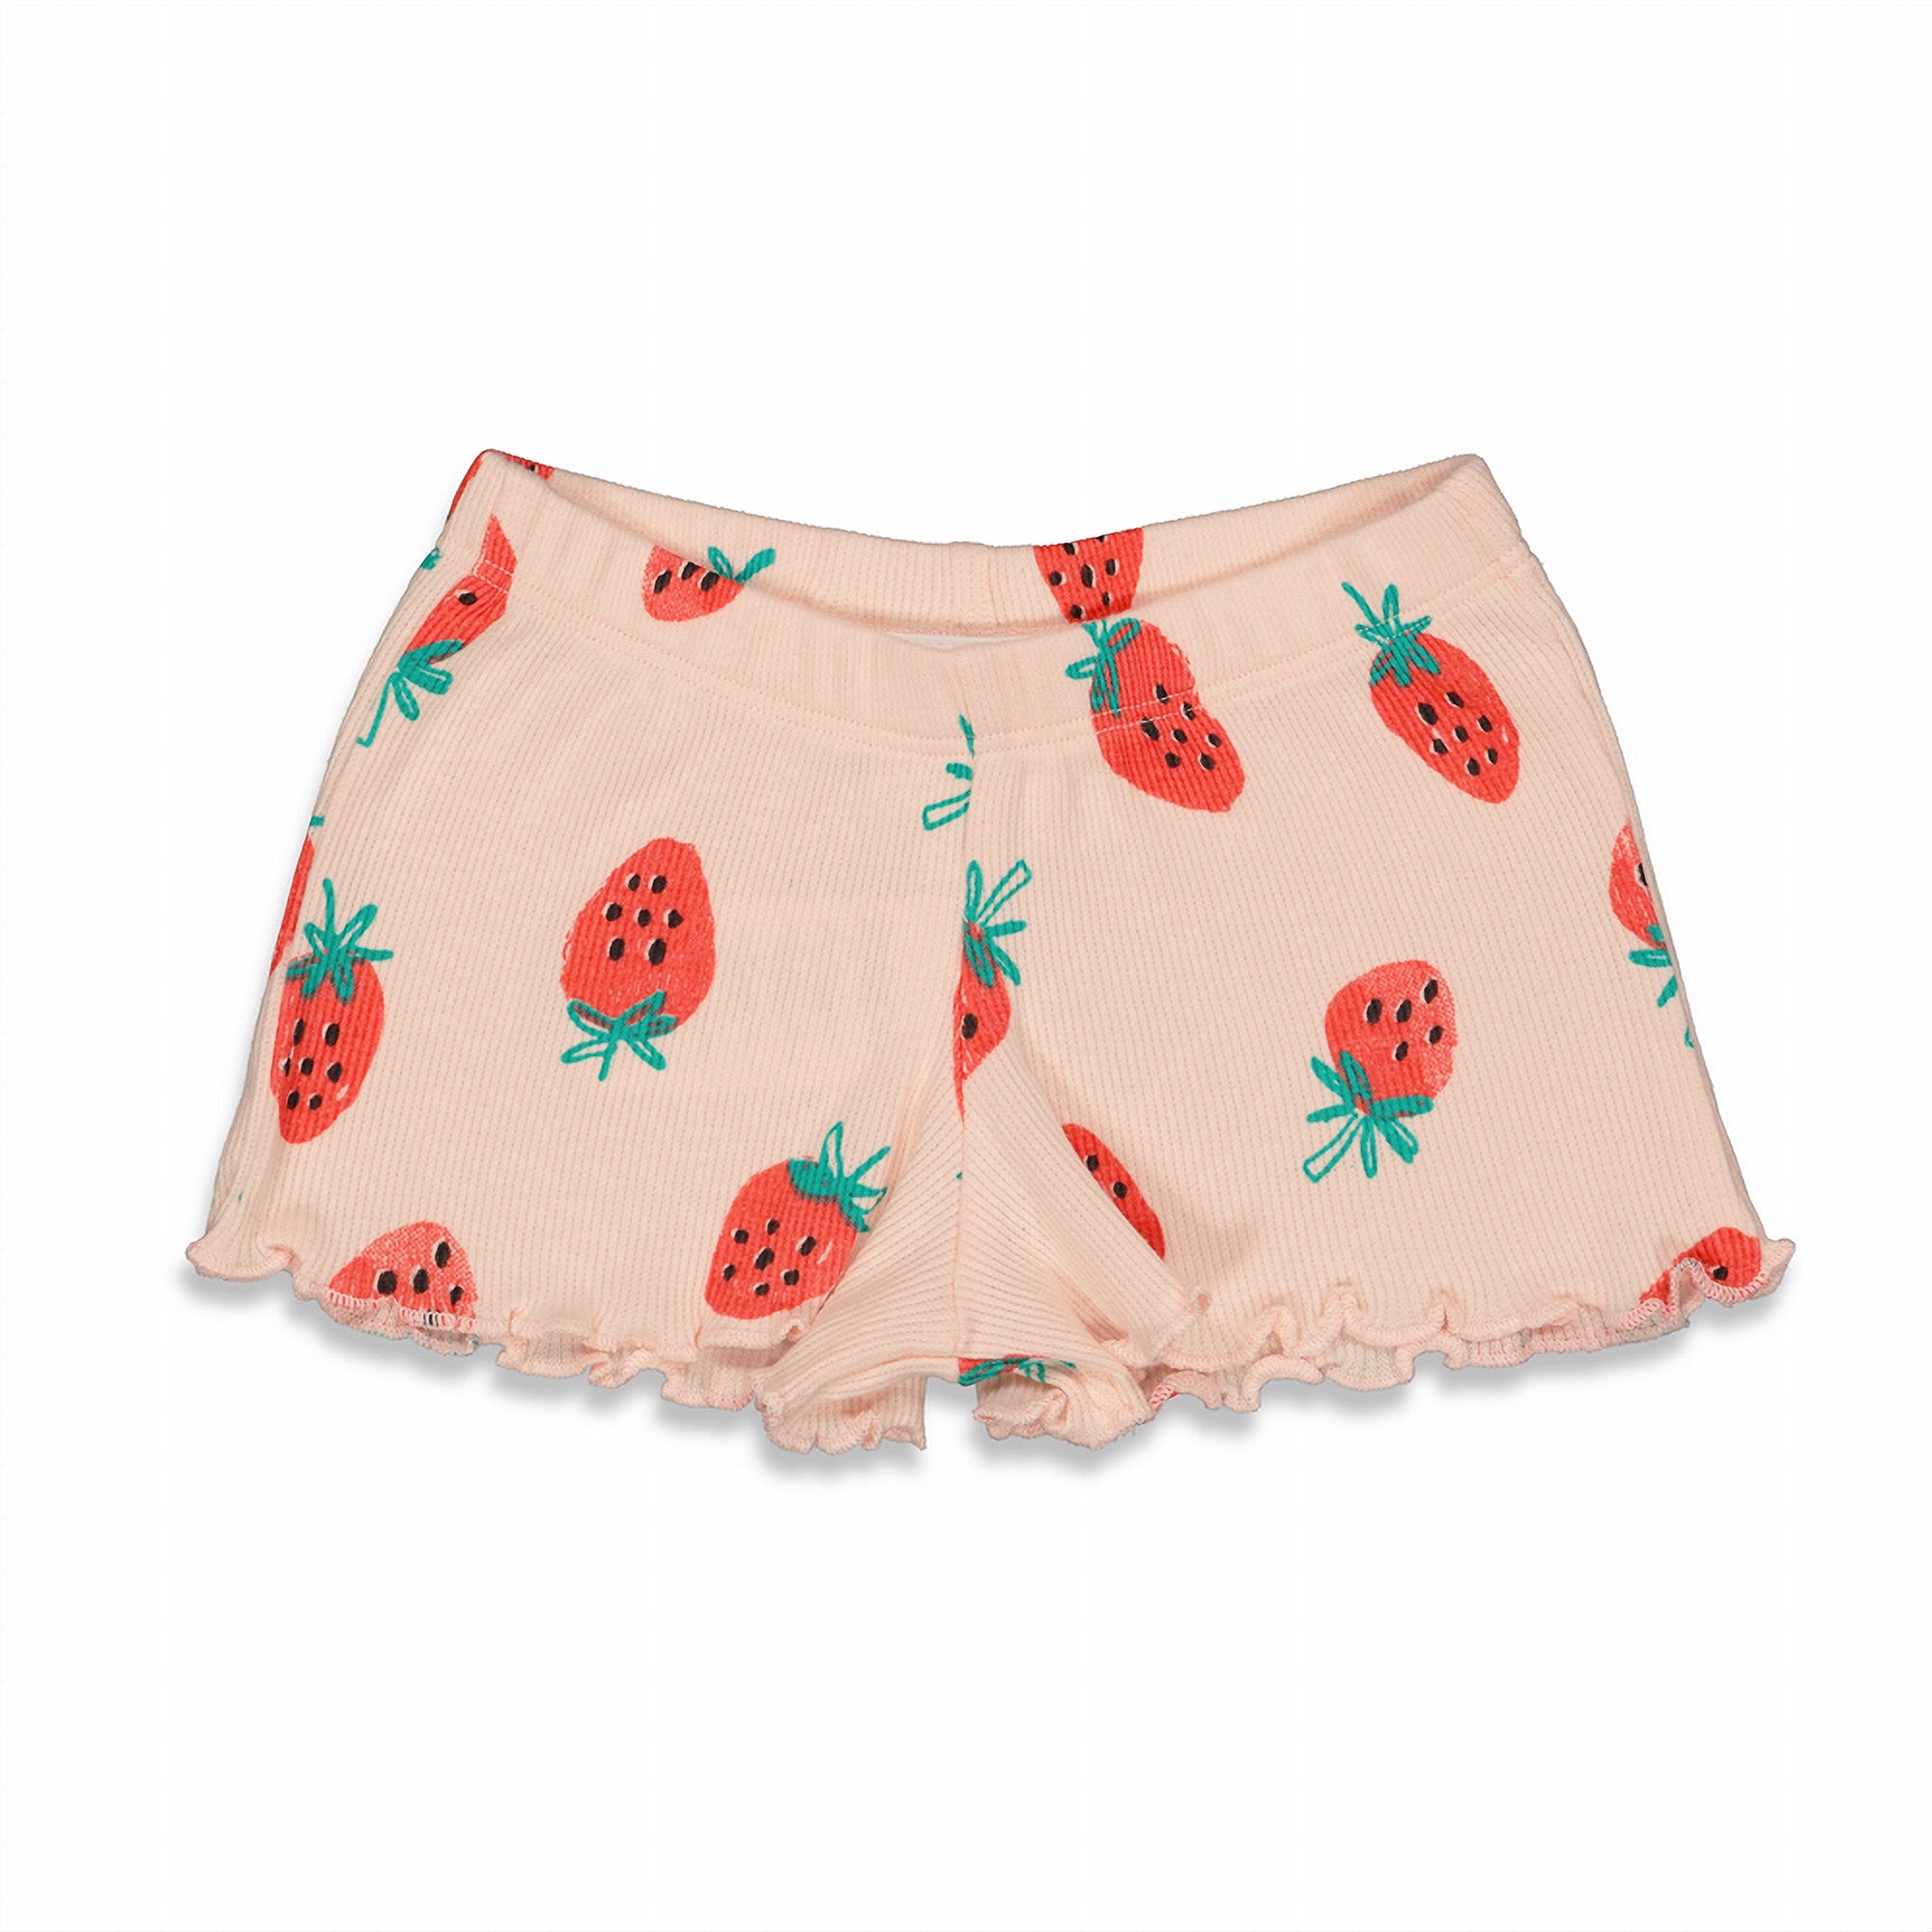 Meisjes Suzy Strawberry - Premium Summerwear by FEETJE van Feetje in de kleur Roze in maat 86.